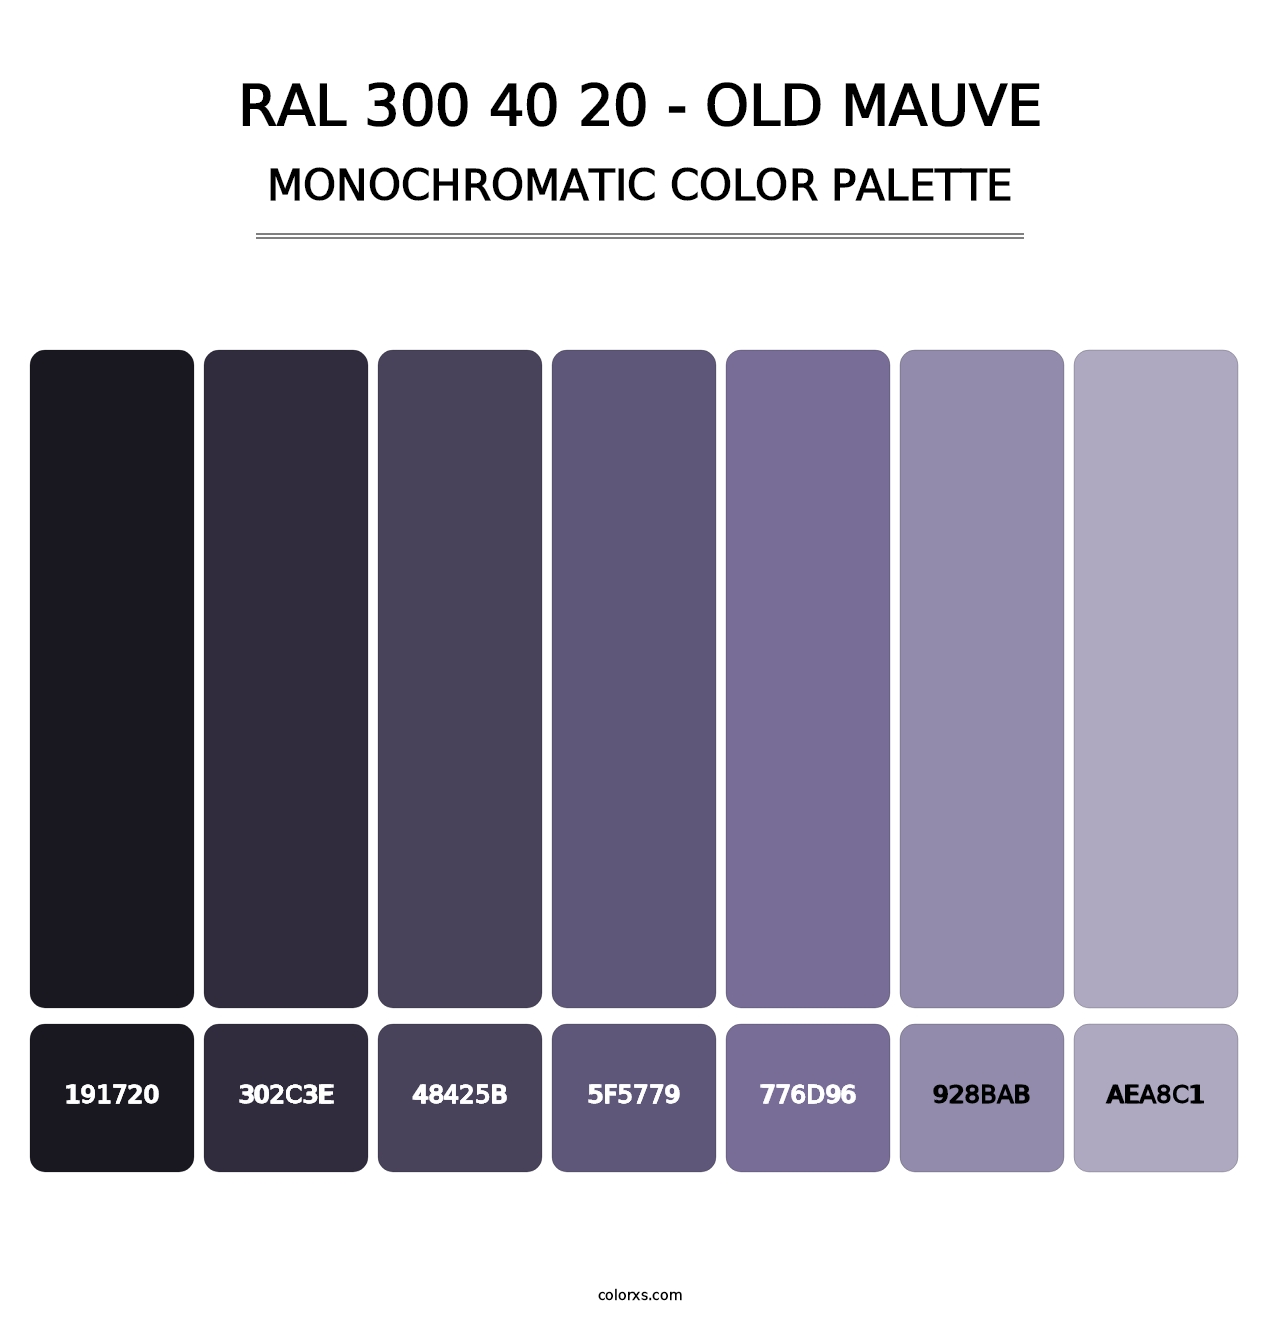 RAL 300 40 20 - Old Mauve - Monochromatic Color Palette